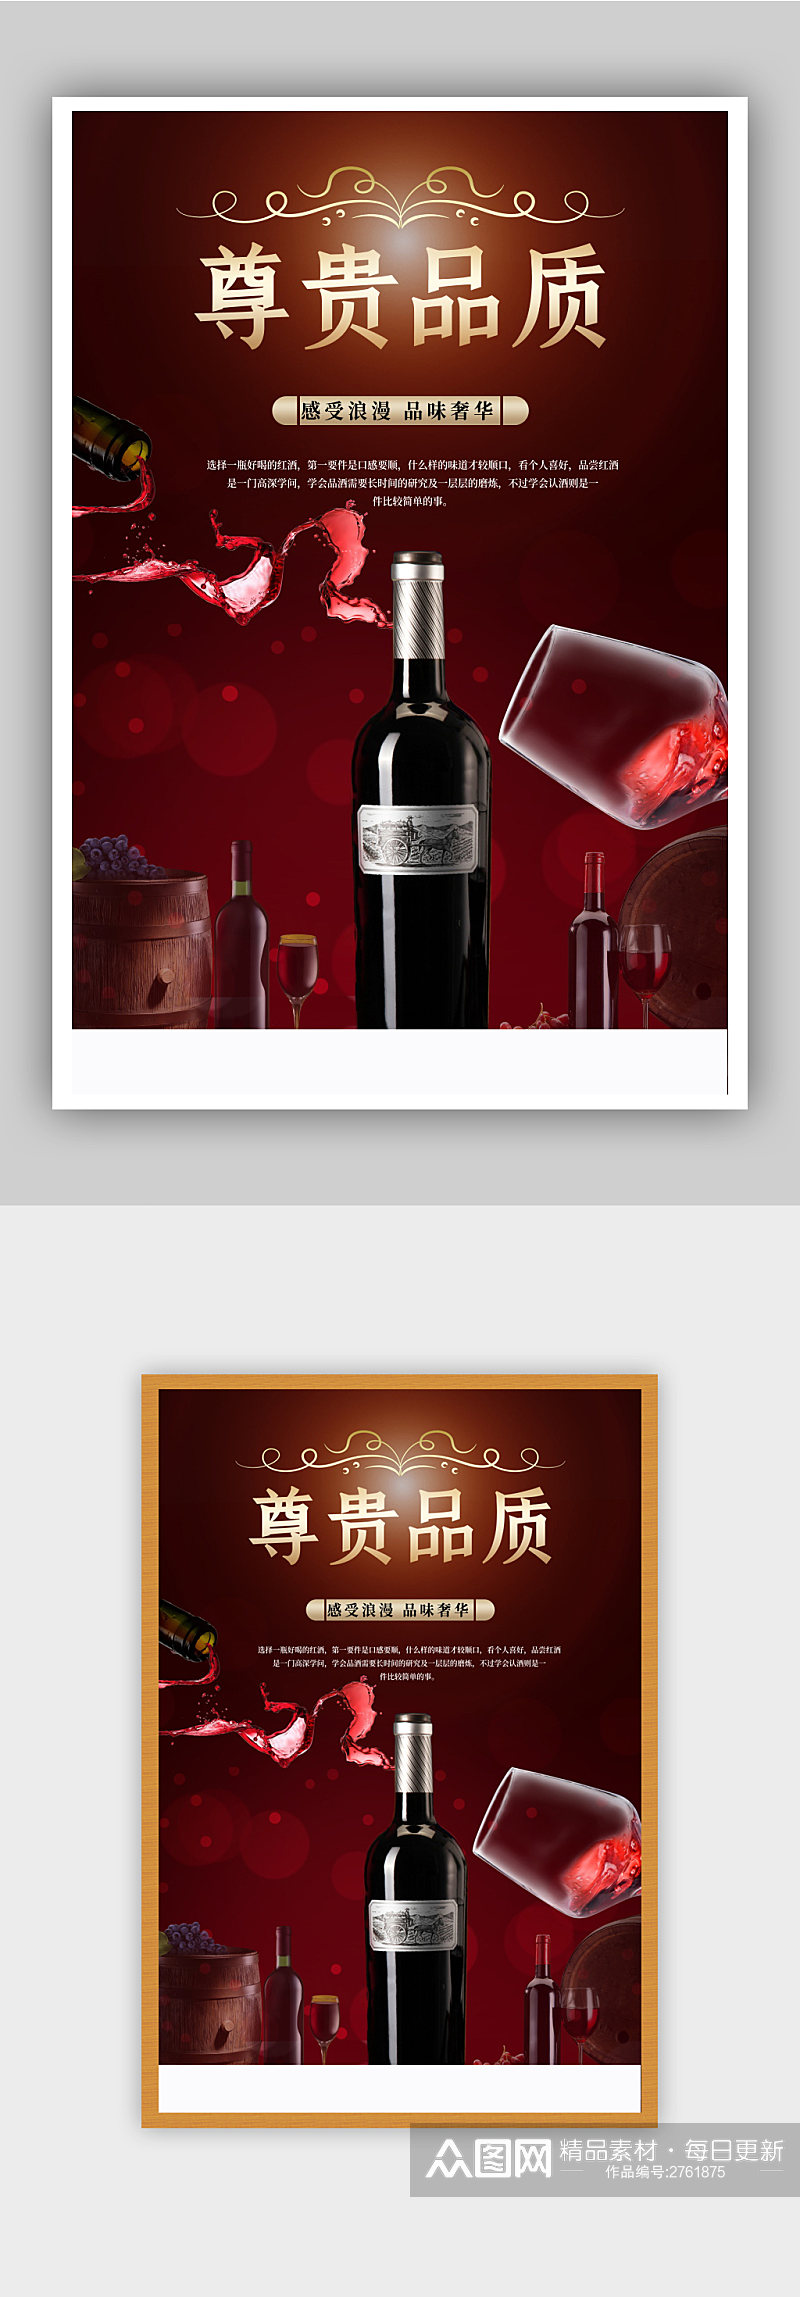 酒庄红酒宣传海报素材